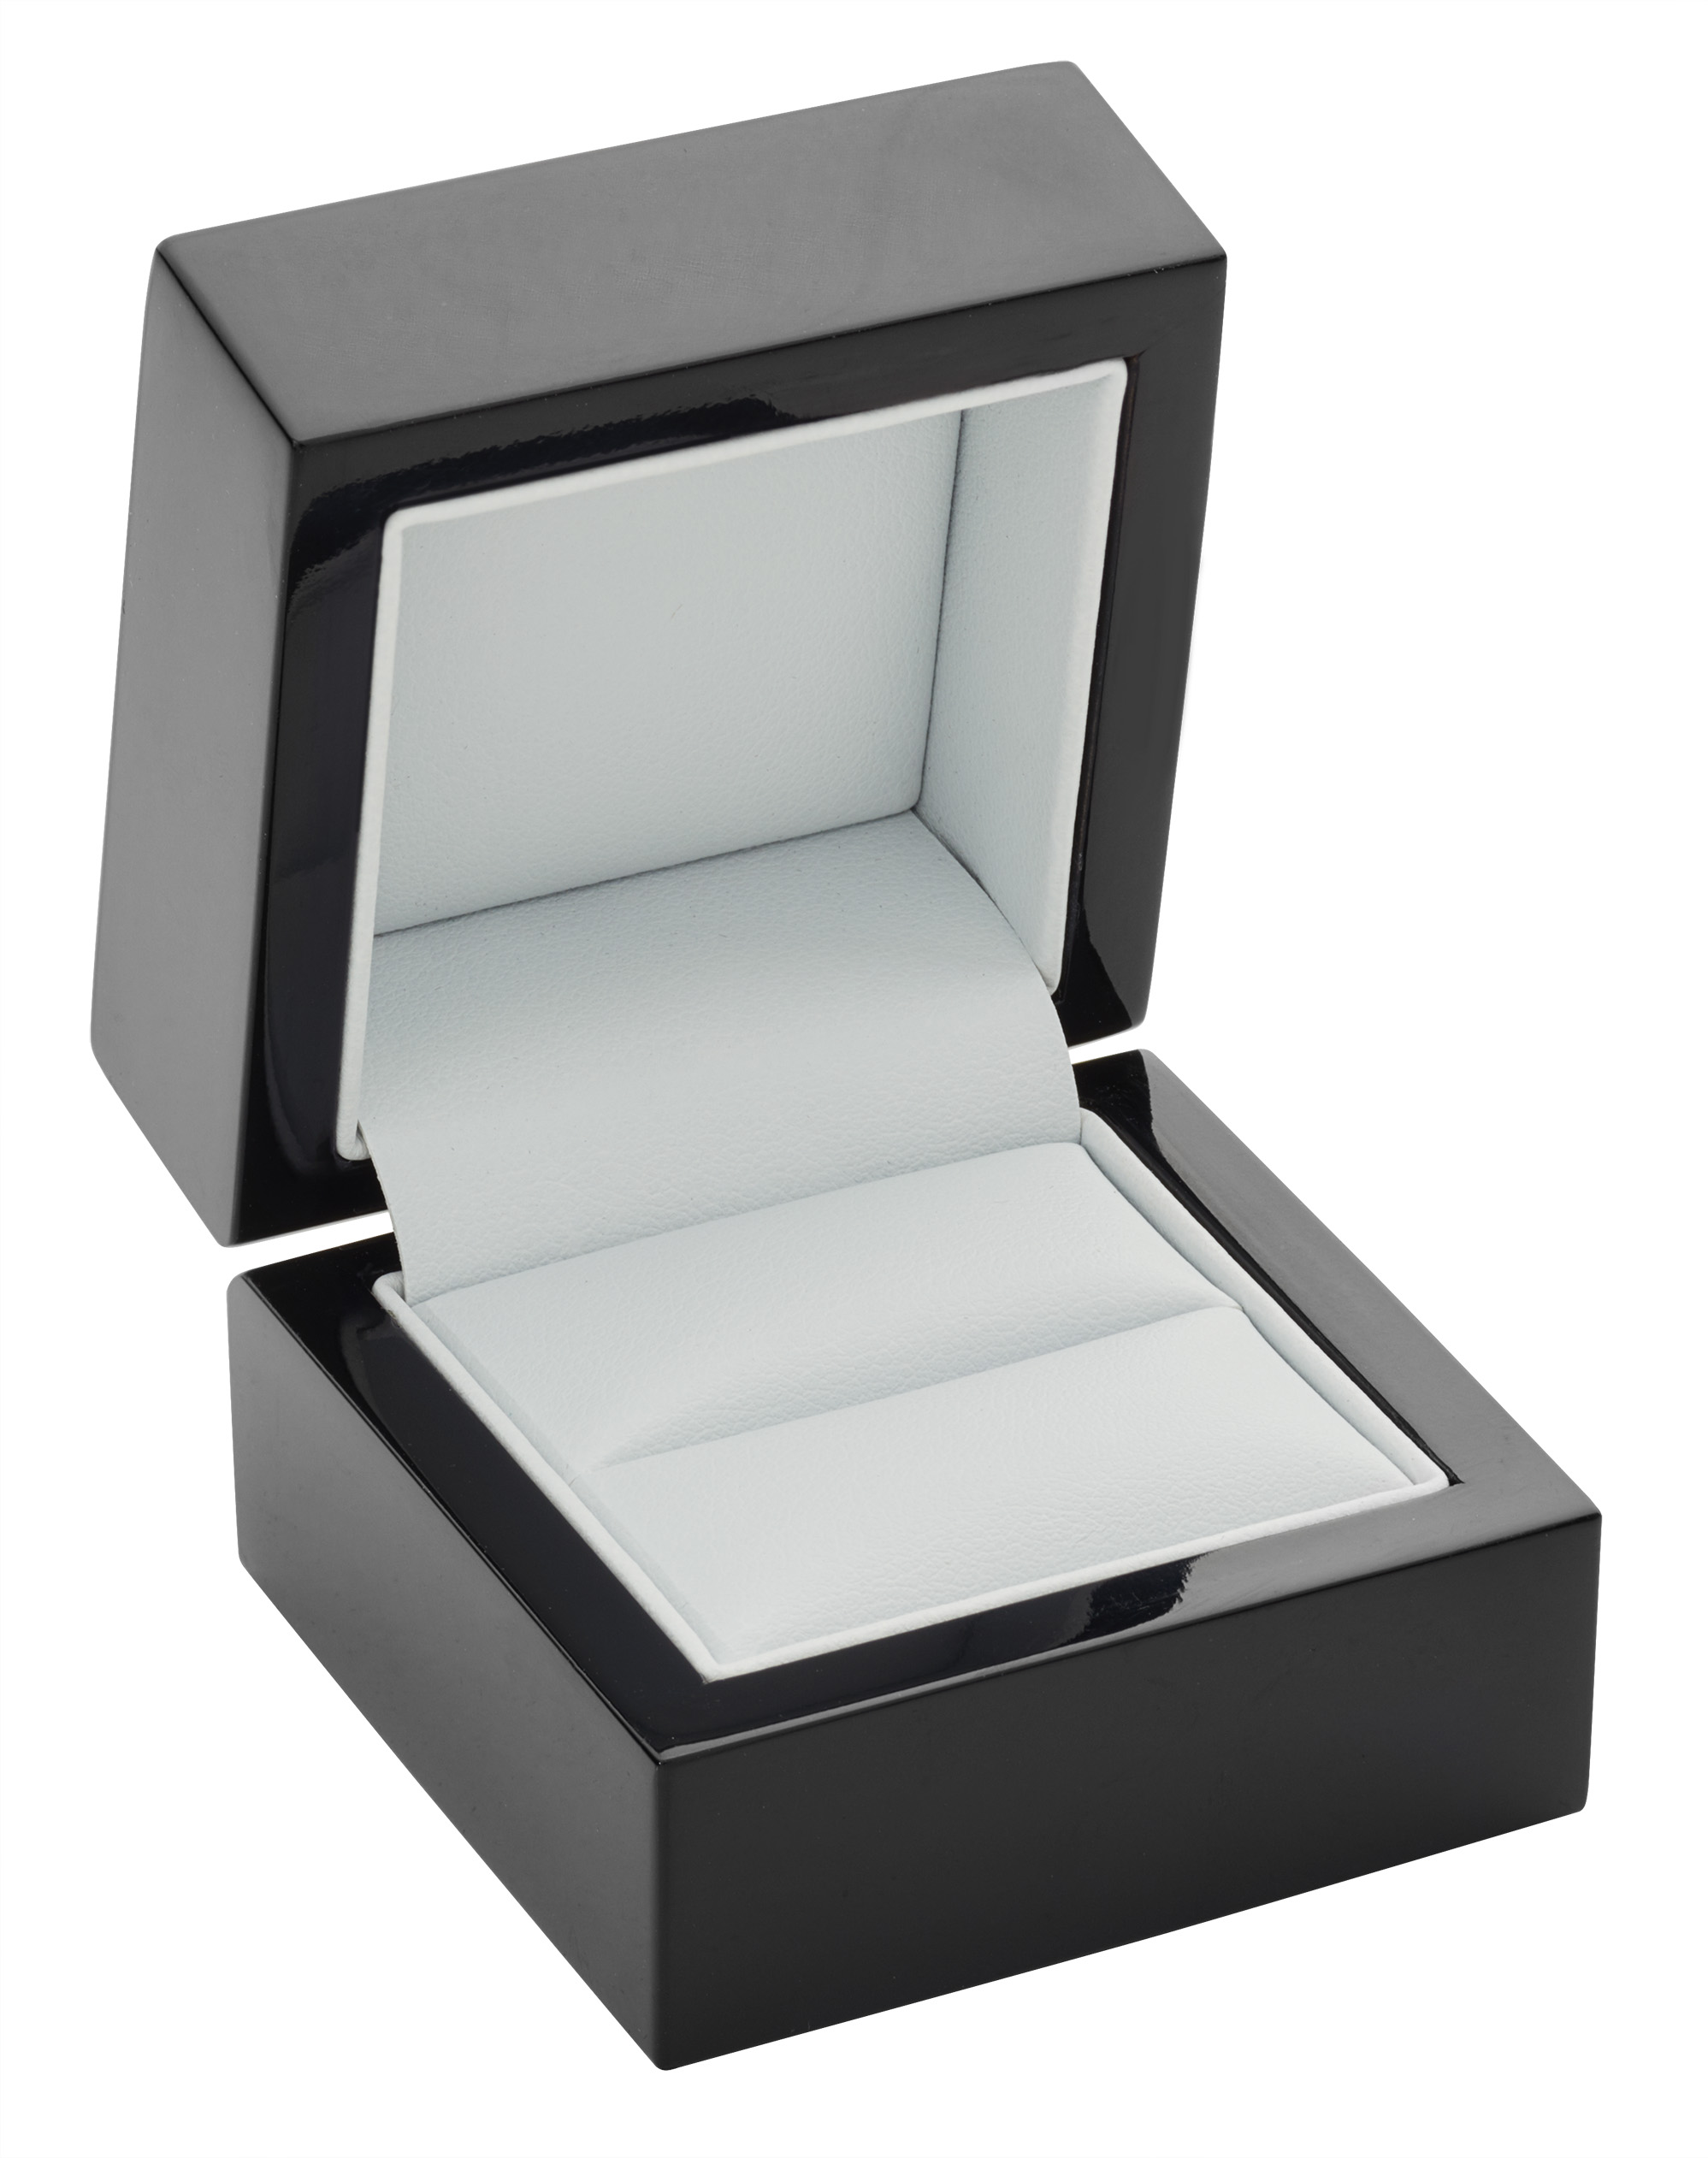 wedding ring box